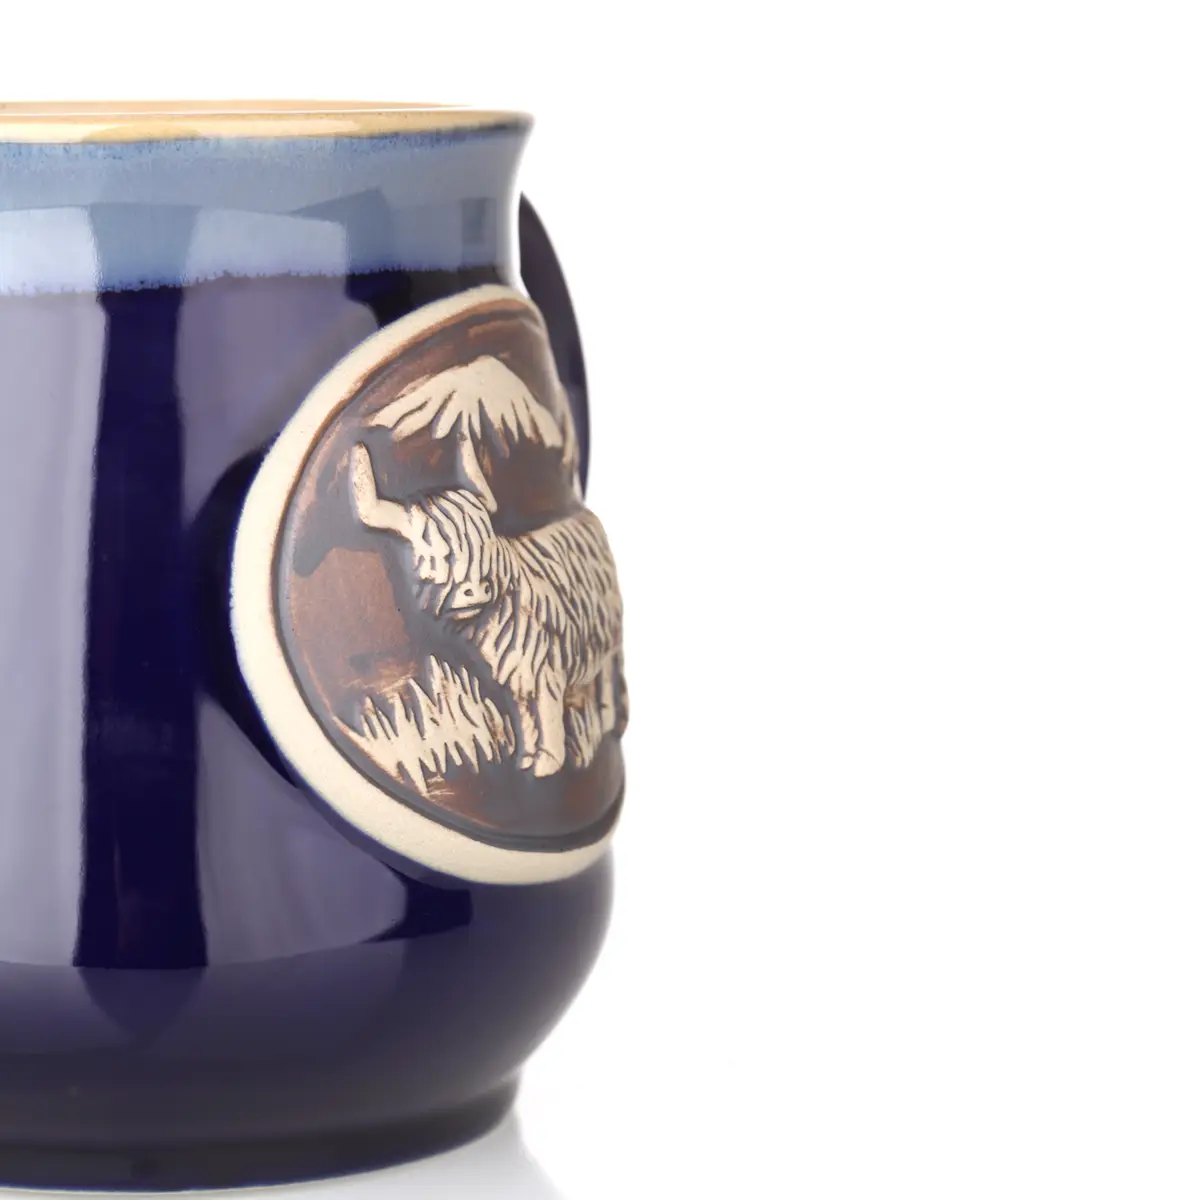 Highland Cow Stoneware Mug - Schottisches Rind Kaffeebecher - Blau